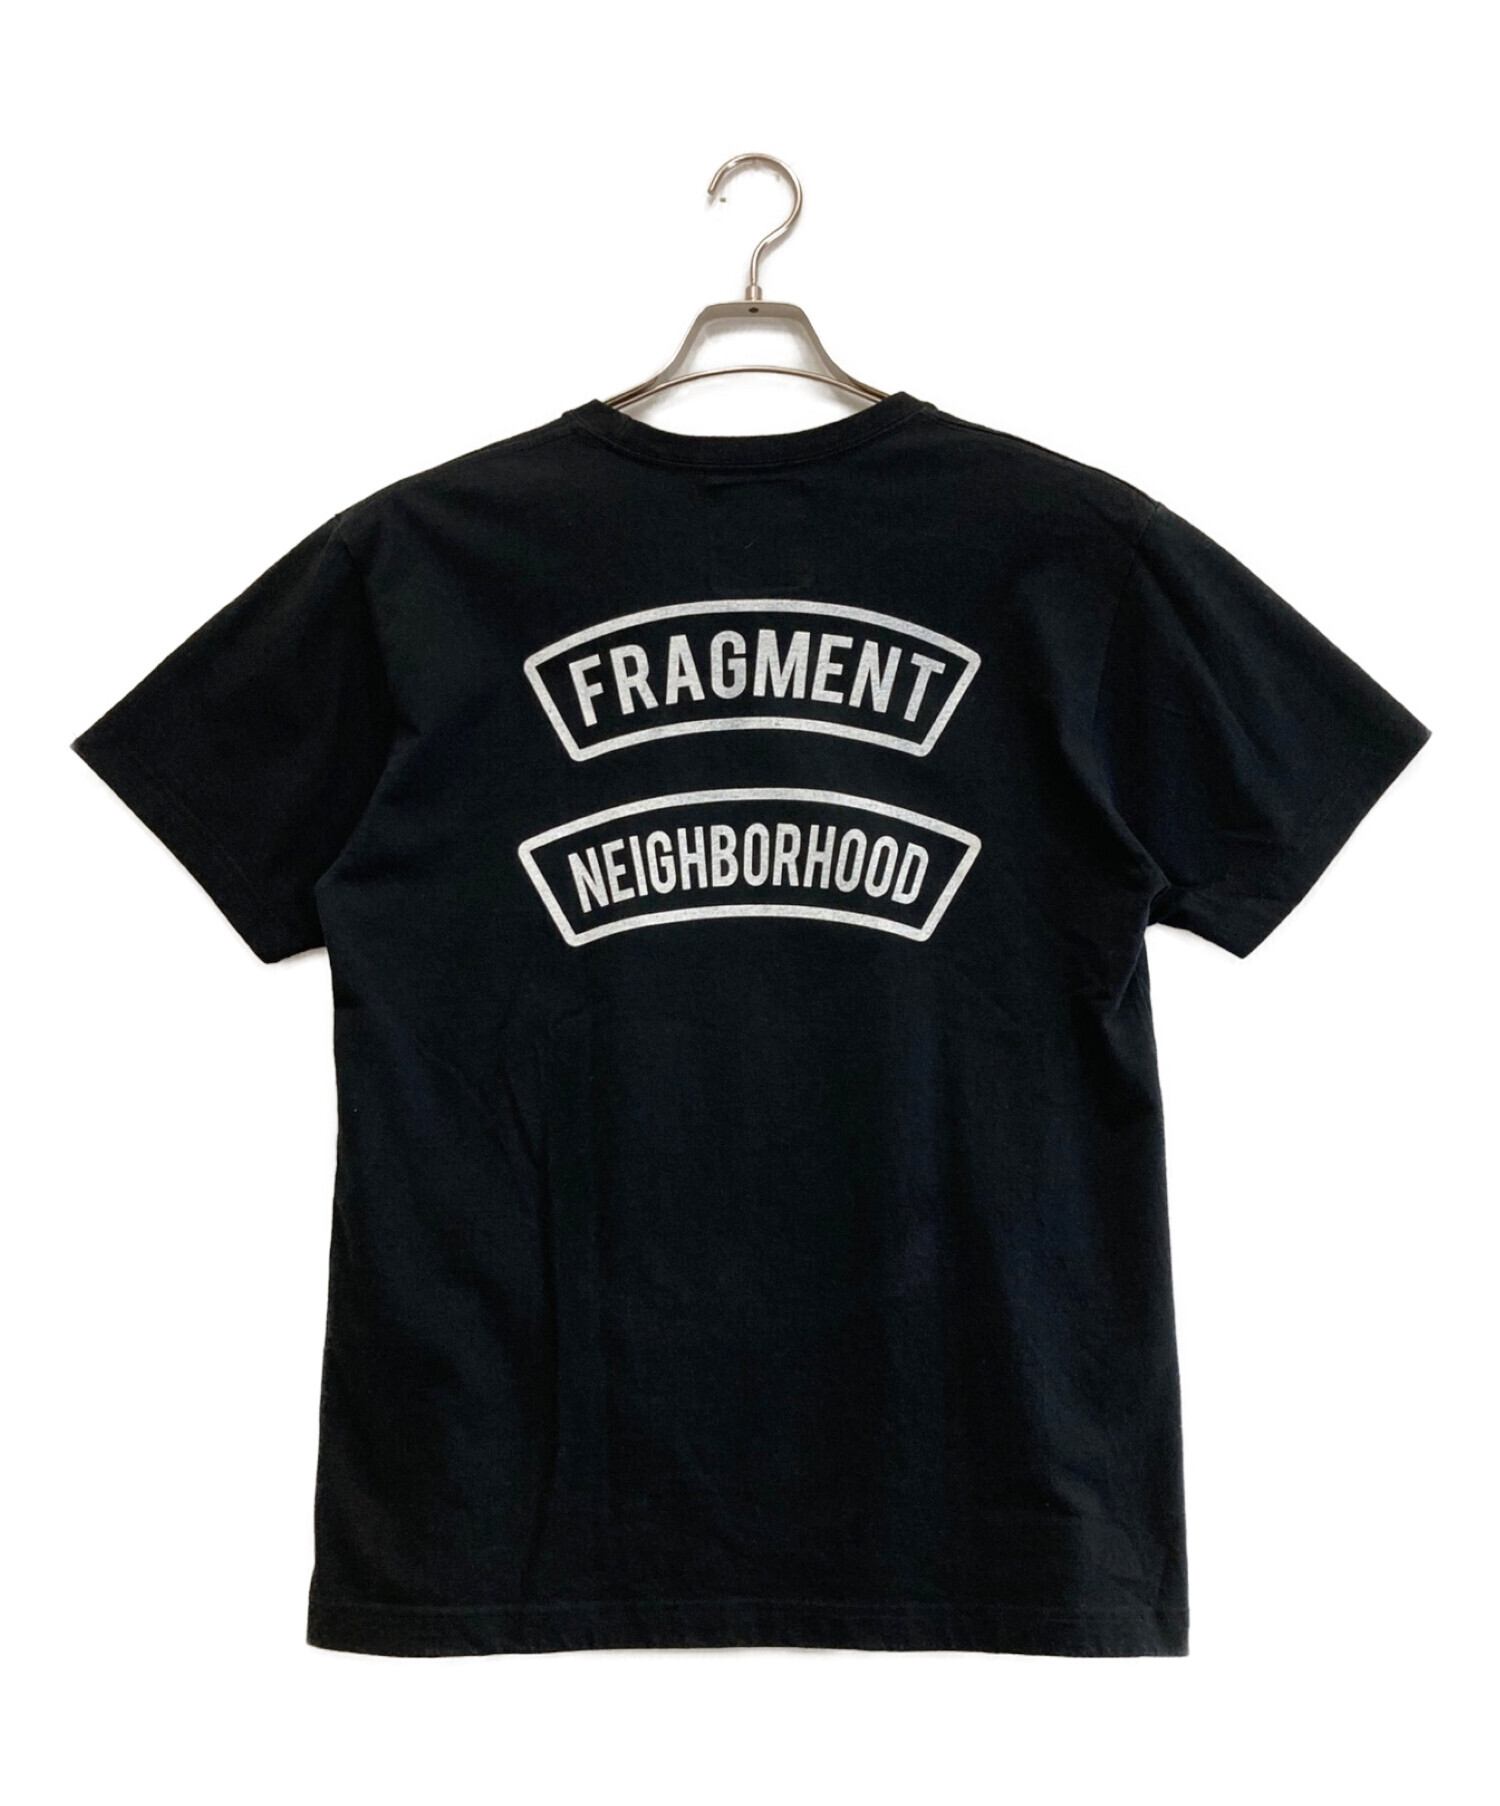 NEIGHBORHOOD (ネイバーフッド) FRAGMENT DESIGN (フラグメント デザイン) プリントTシャツ ブラック  サイズ:MEDIUM